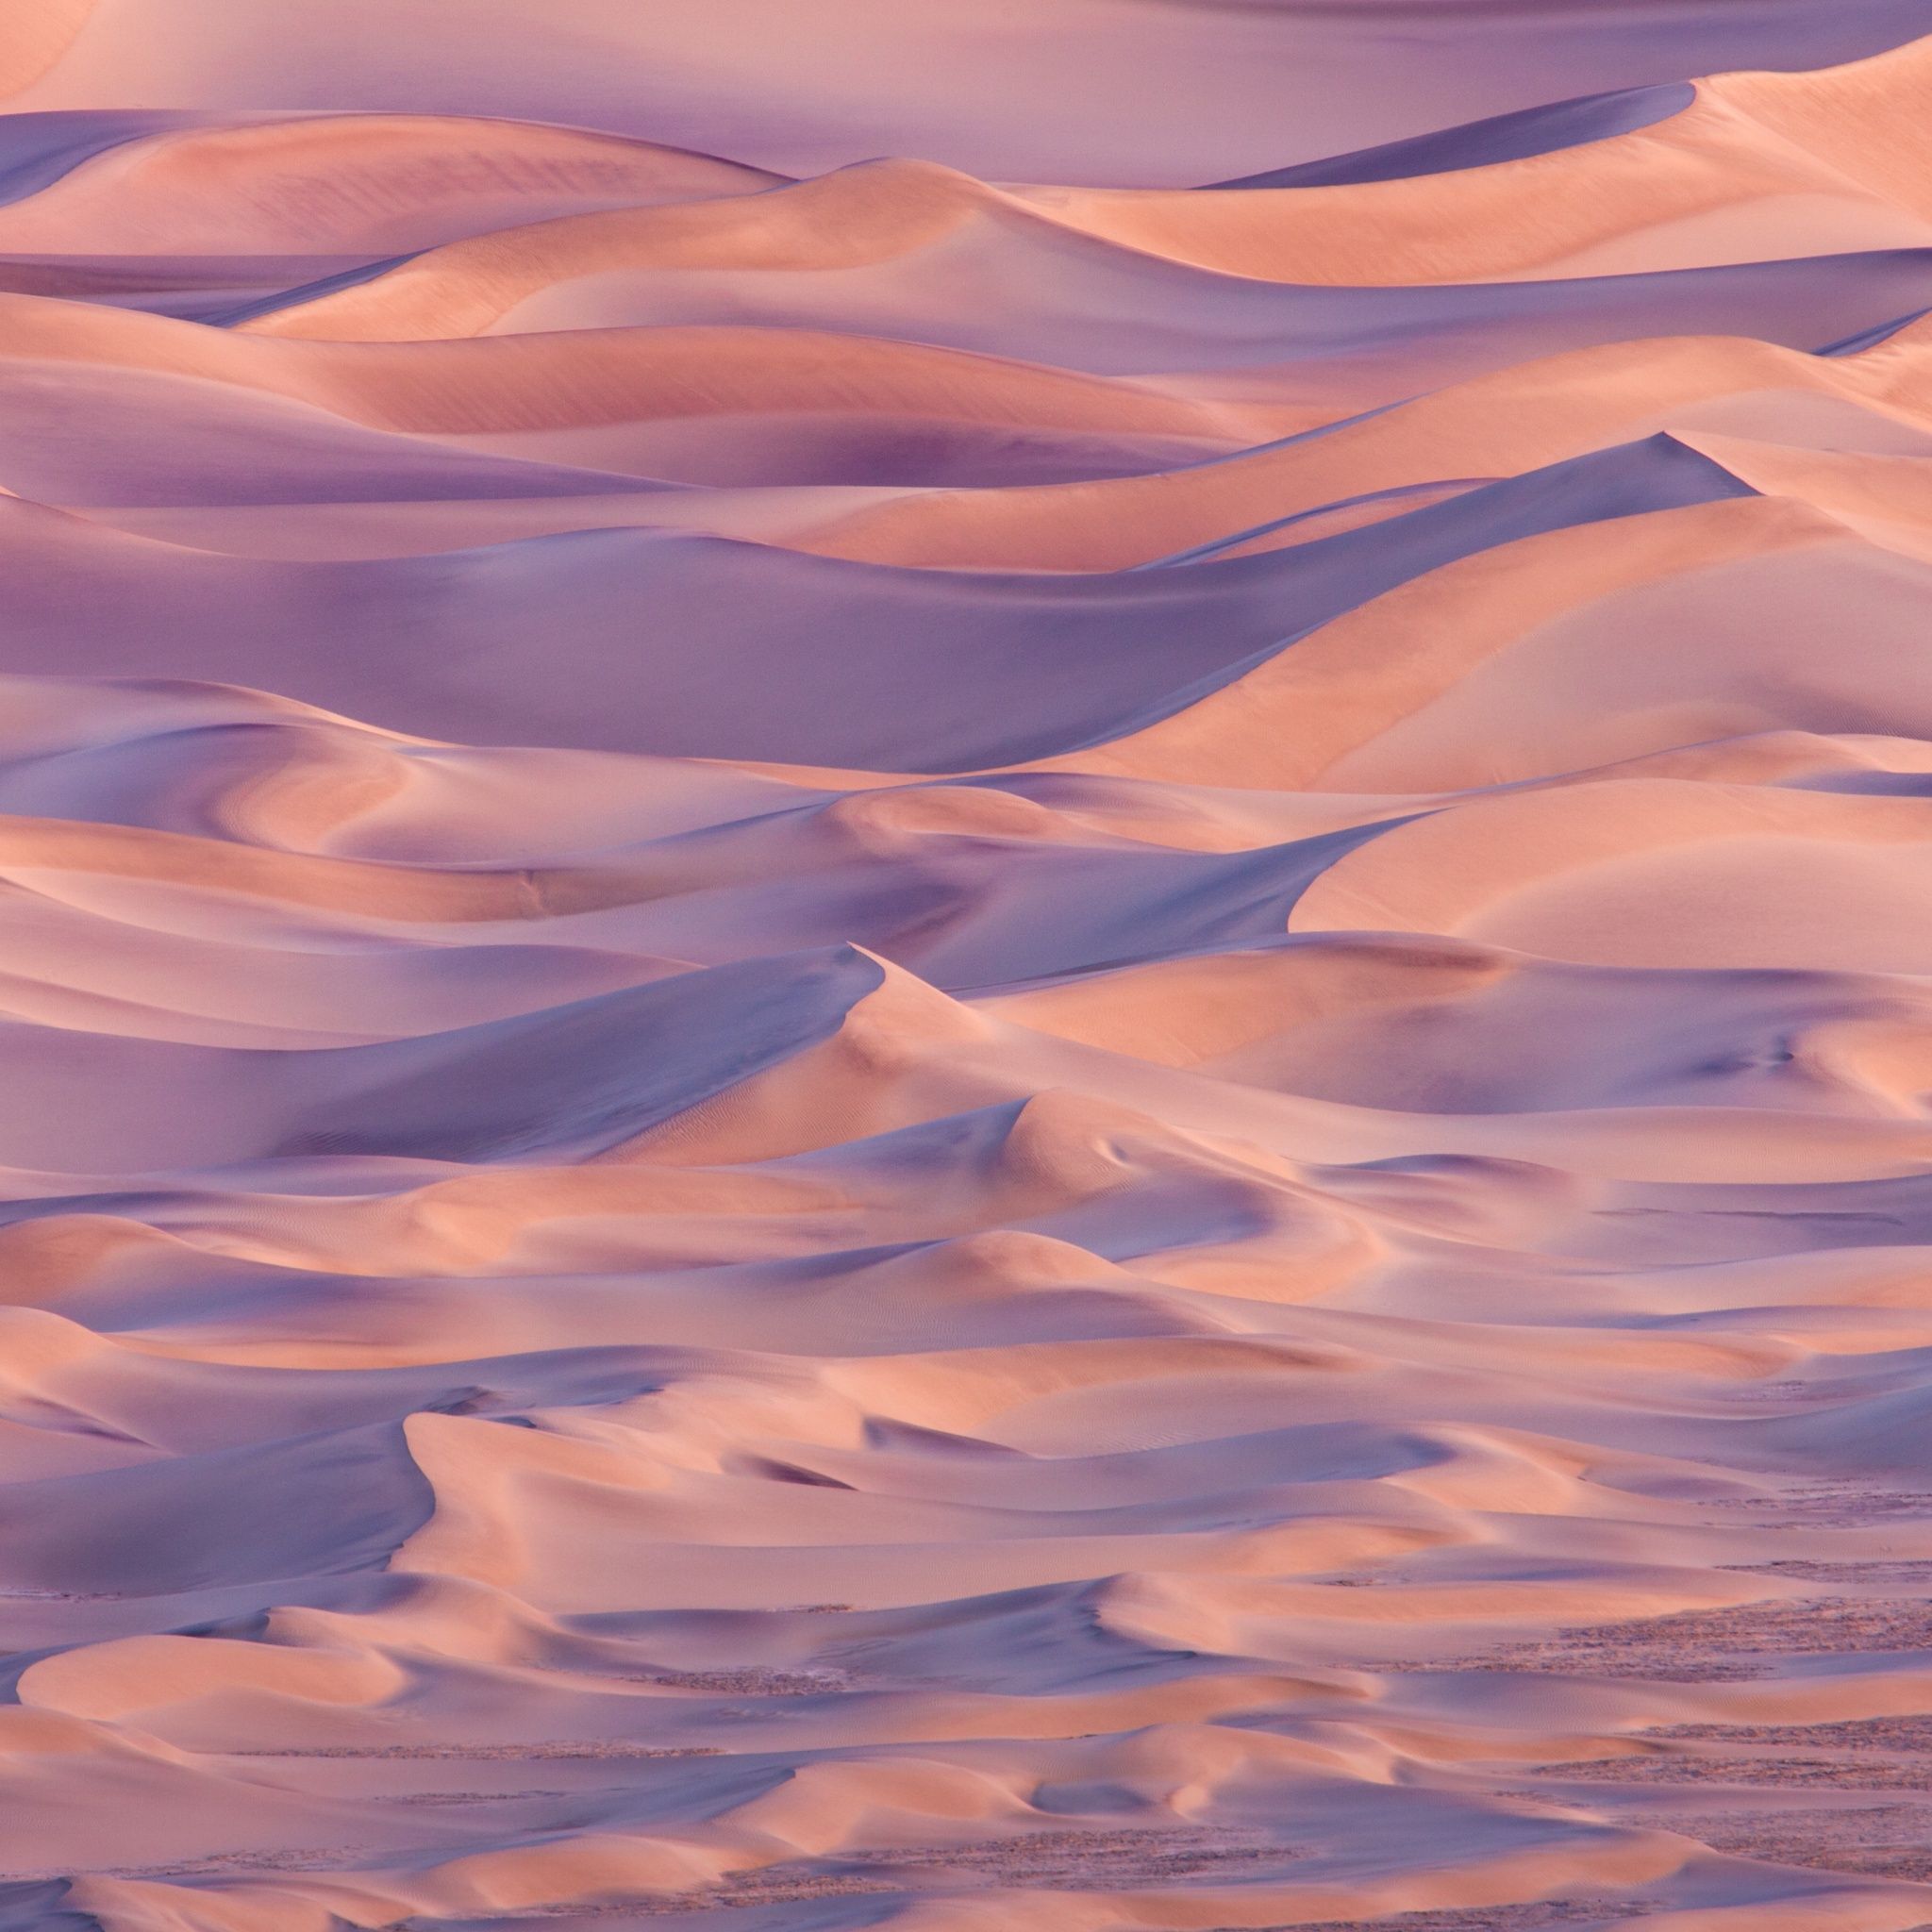 Desert Wallpaper 4K, OS X Mavericks, Sand Dunes, Stock